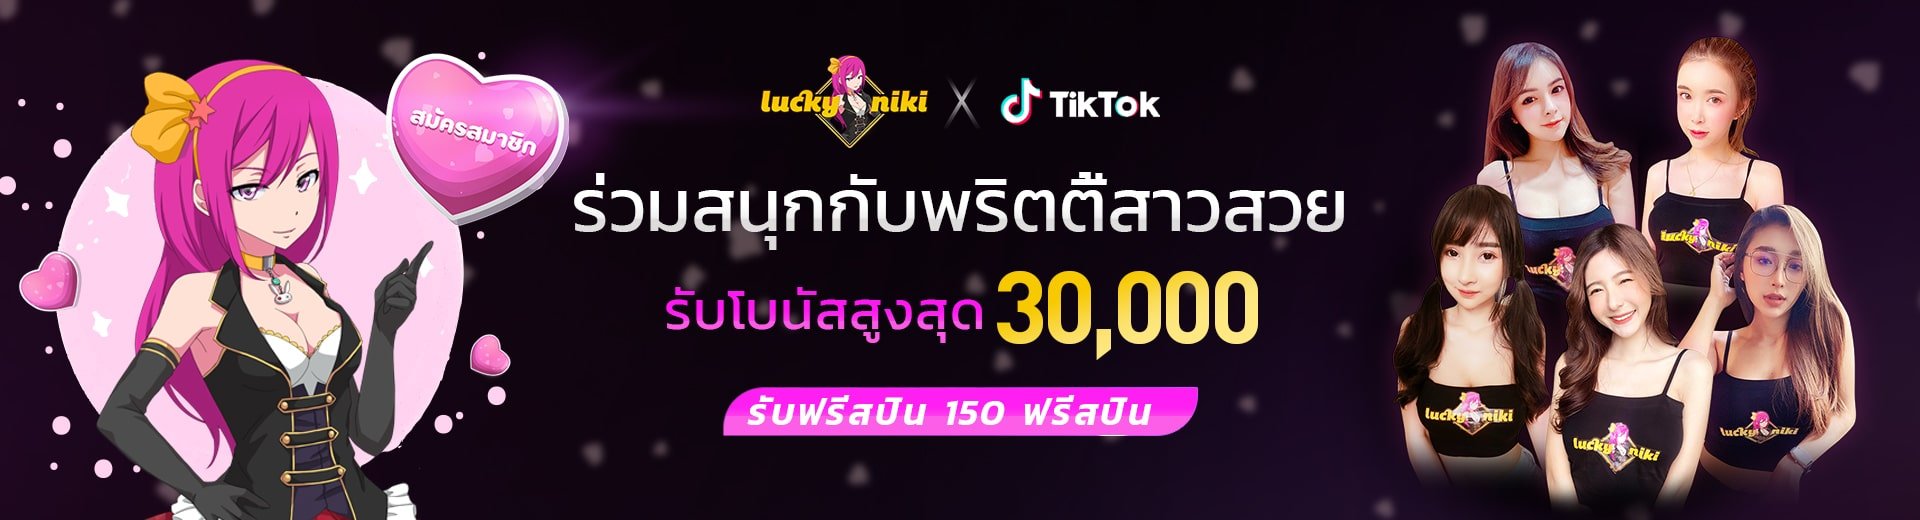 ร่วมสนุกกับพริตตี้สาวสวย TikTok ที่ LuckyNiki วันนี้ รับฟรีเครดิต 300%